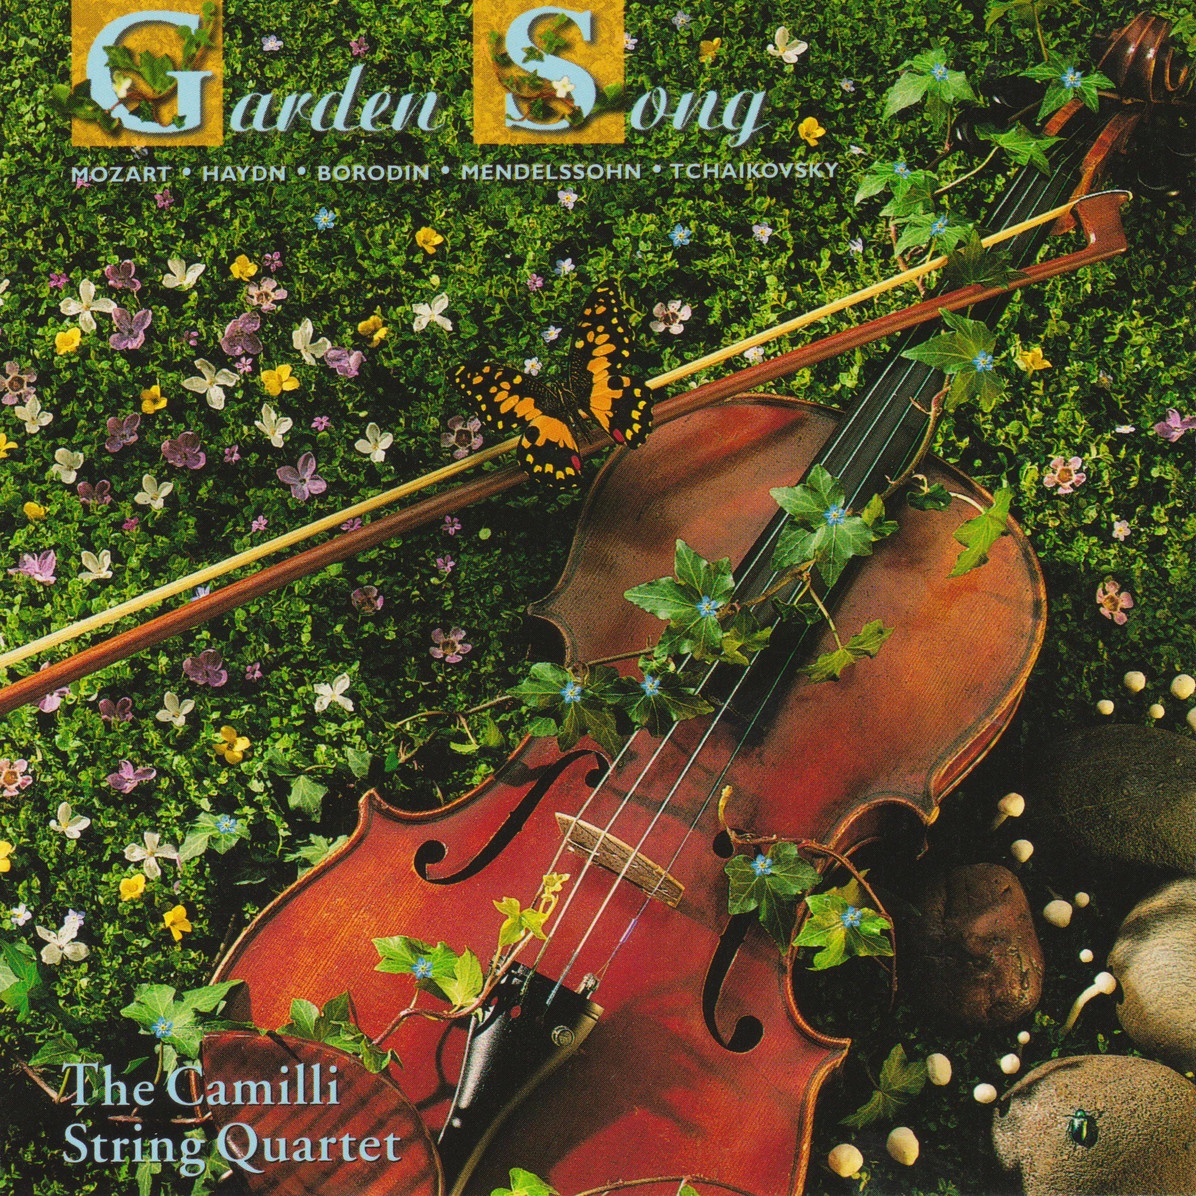 Garden Song